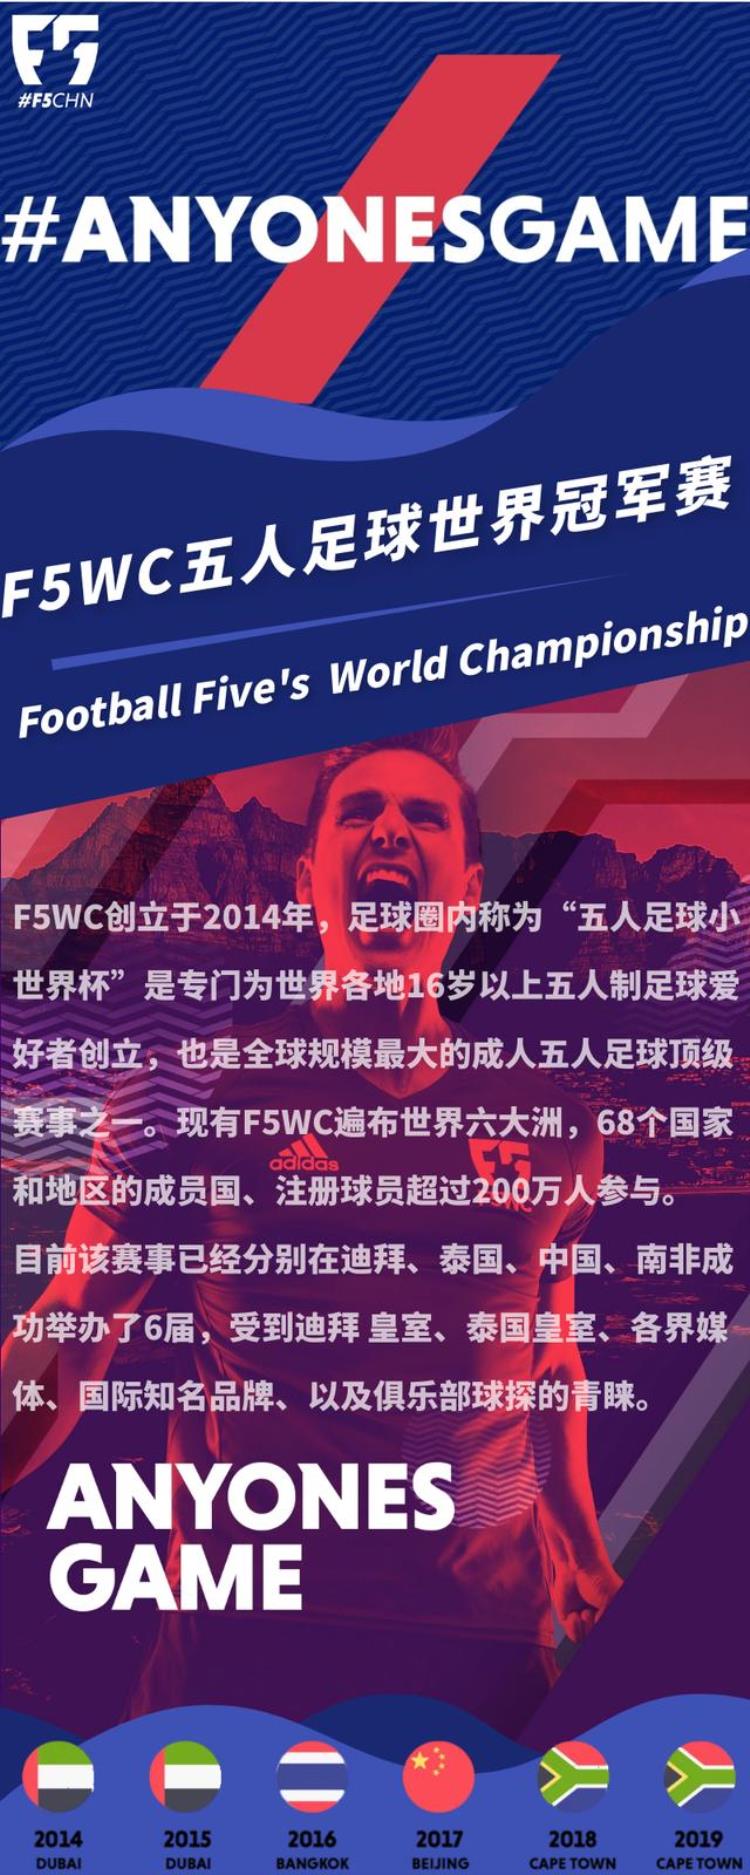 校园足球创新点「F5WC高校足球的创新思维」